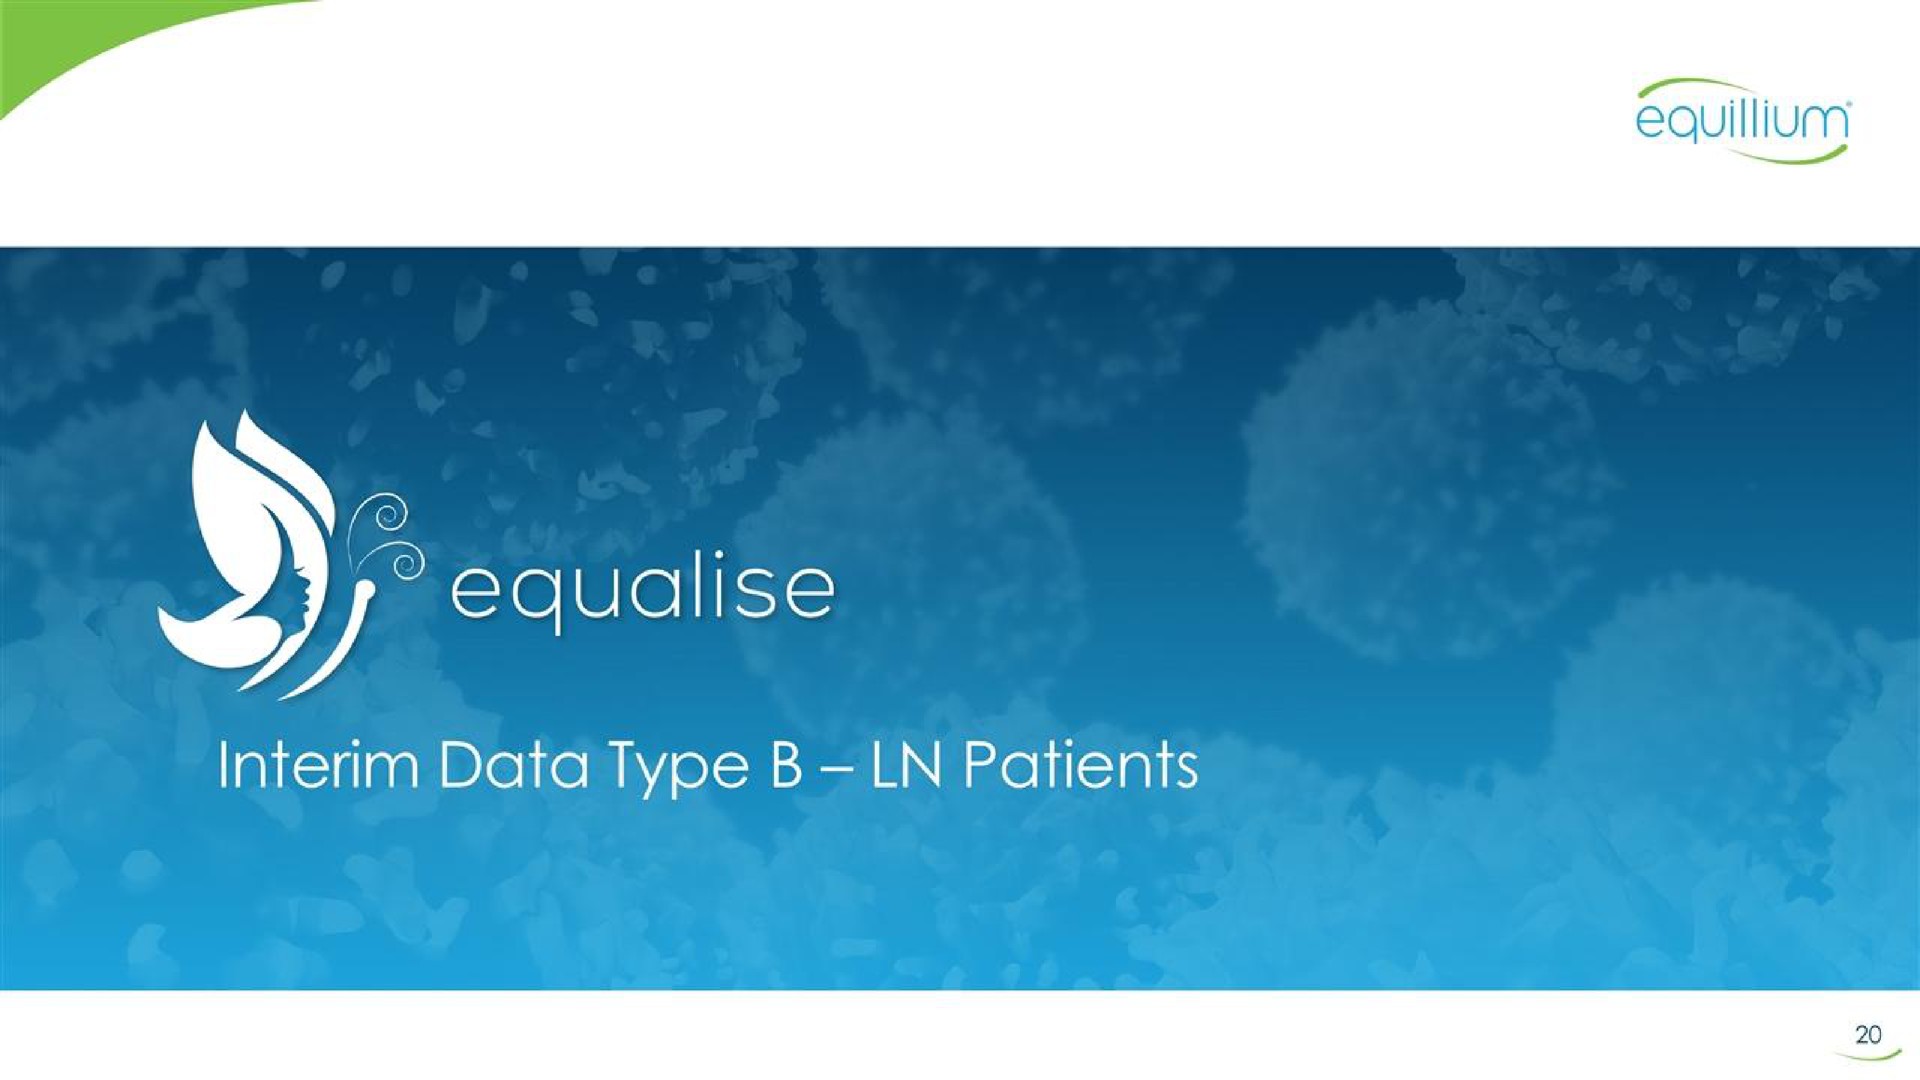 interim data type patients | Equillium